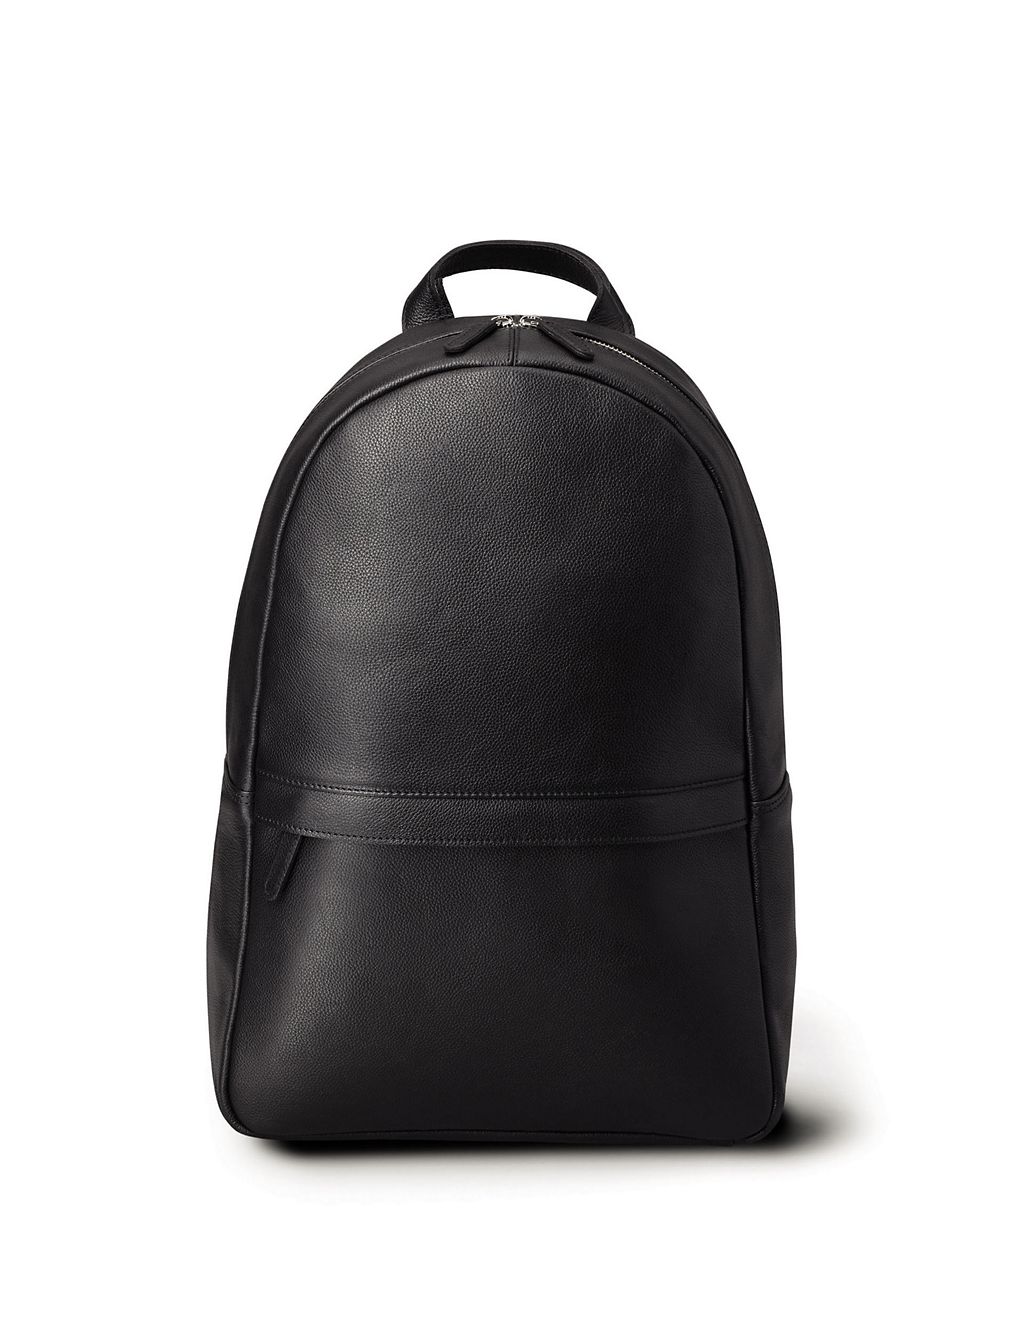 Leather Pebble Grain Backpack | Charles Tyrwhitt | M&S